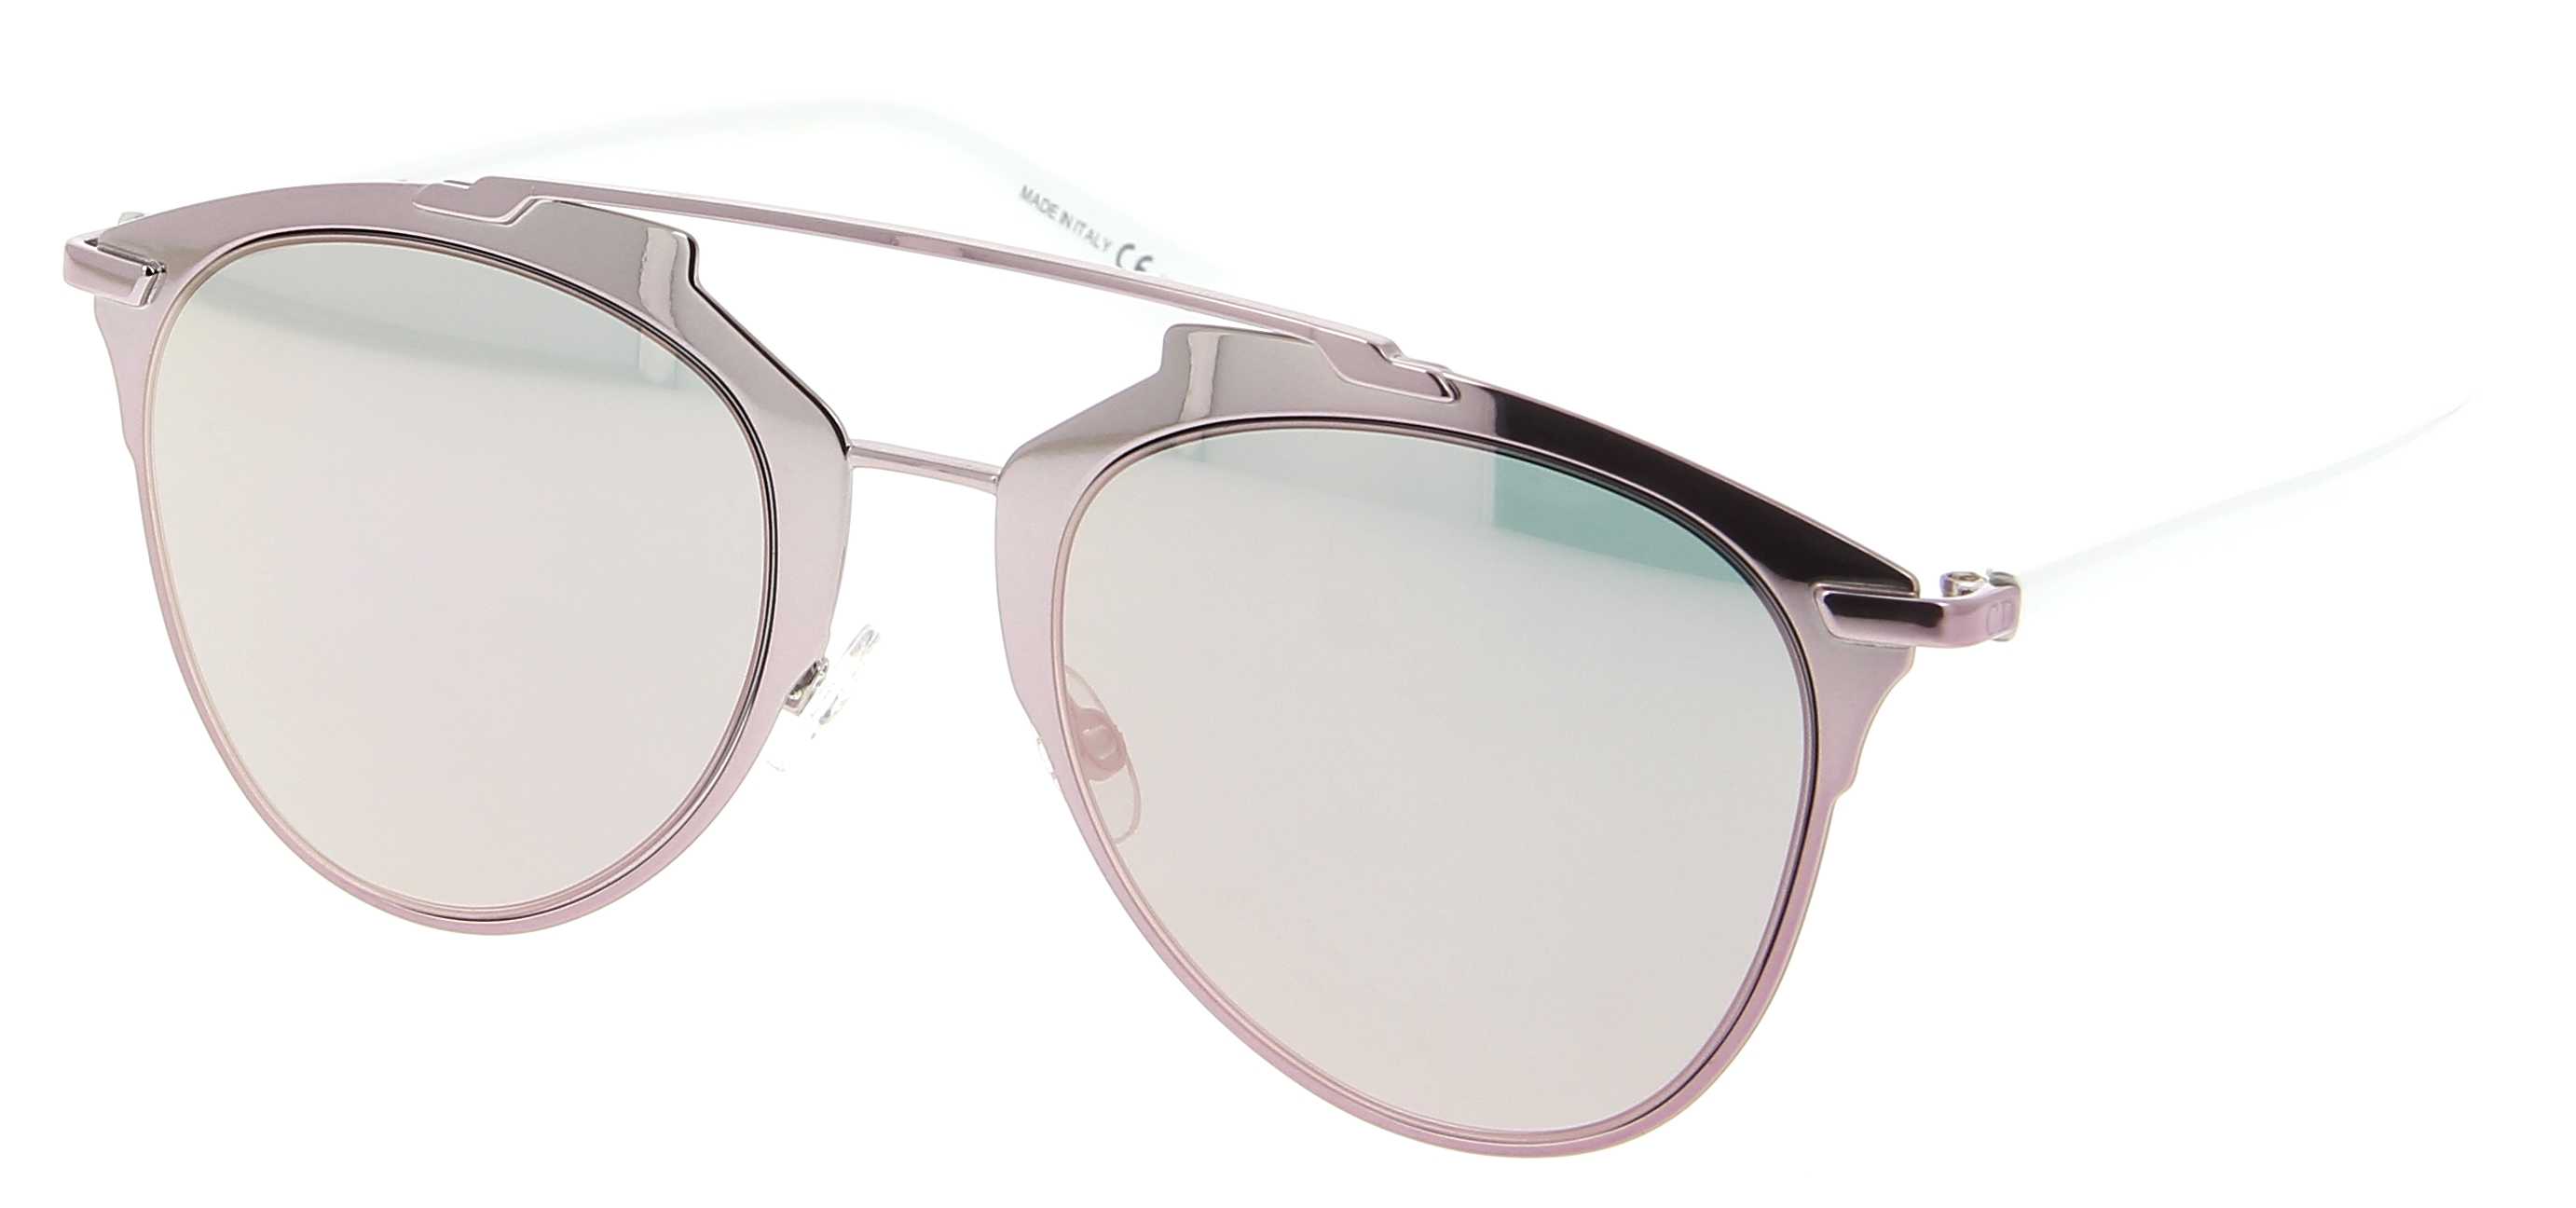 lunettes de soleil dior cd diorreflected m2q  0j  52  21 femme rose    blanc aviateur cercl u00e9e